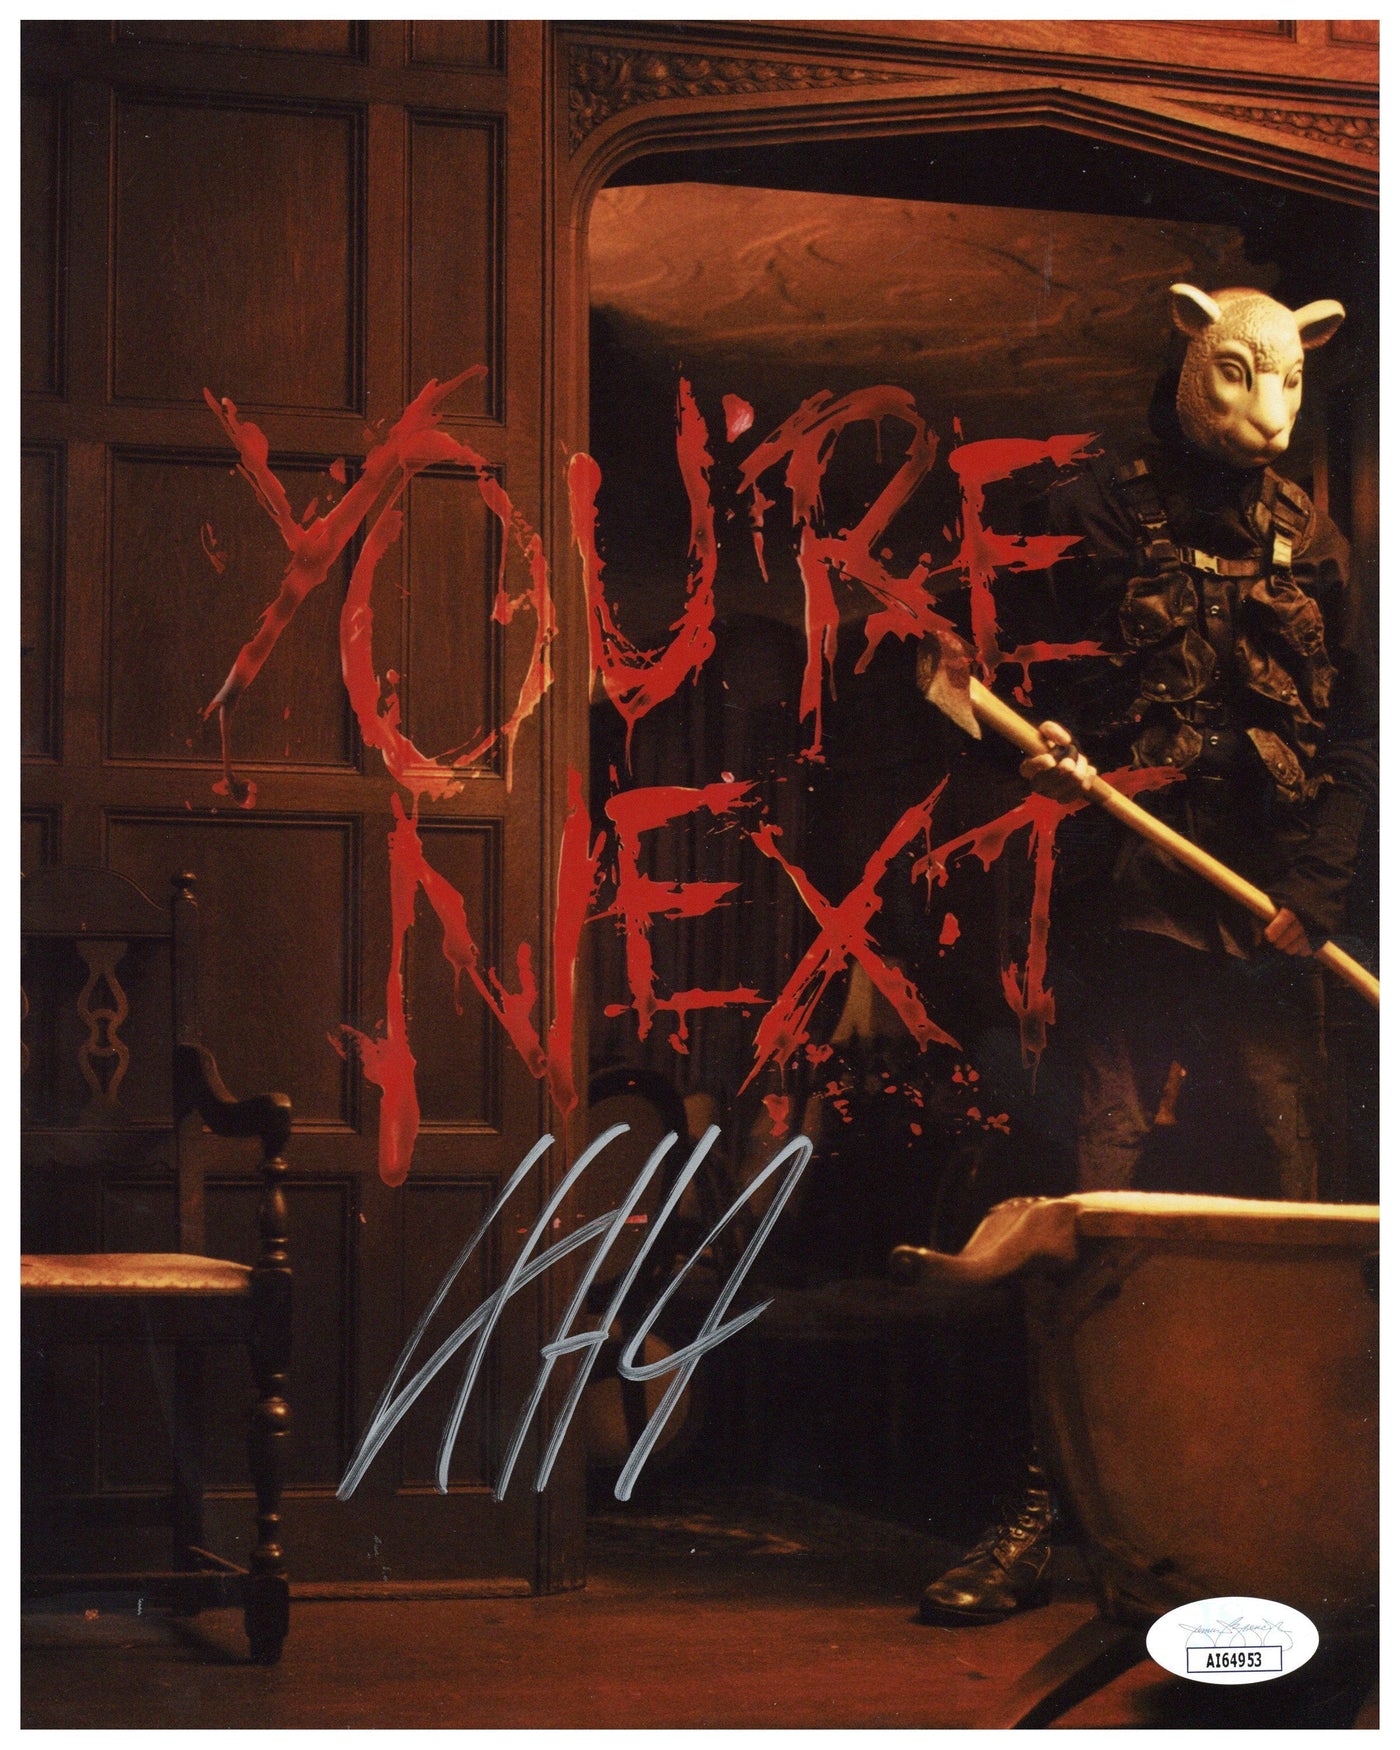 L.C. Holt Authentic Signed 8x10 Photo You're Next Horror Film Autographed JSA COA